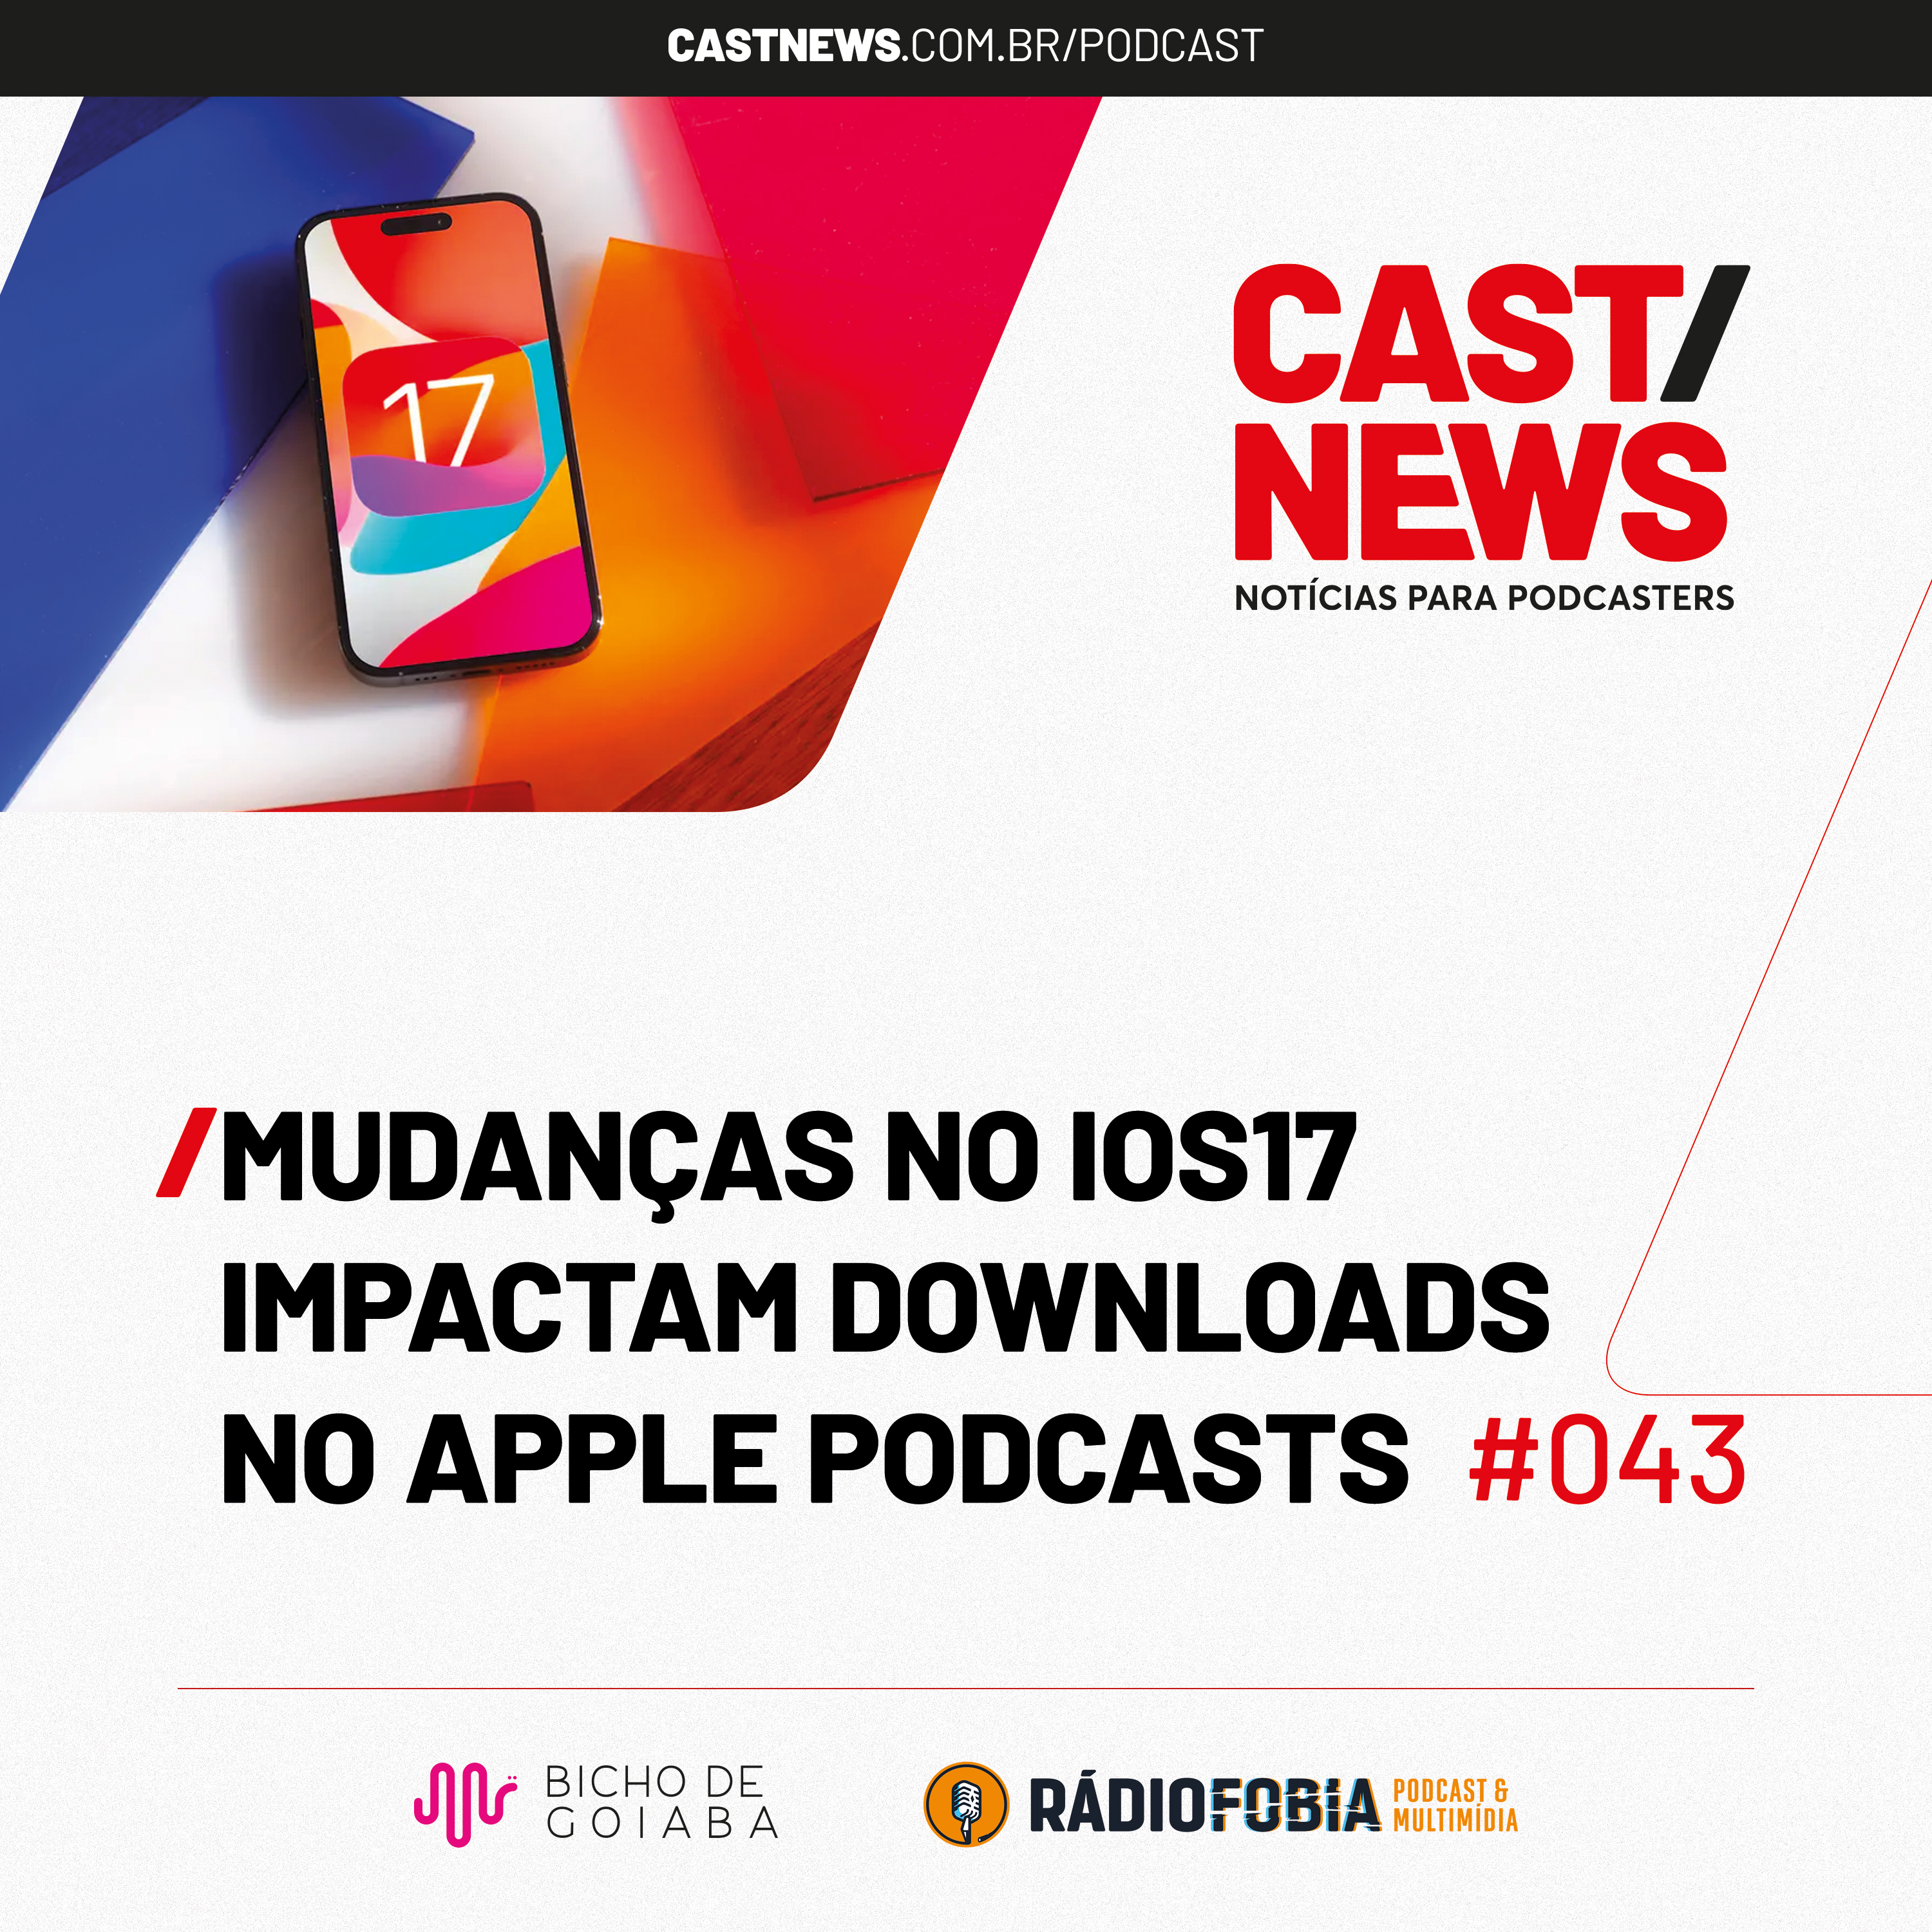 CASTNEWS #043 - Mudanças no iOS17 impactam downloads no Apple Podcasts